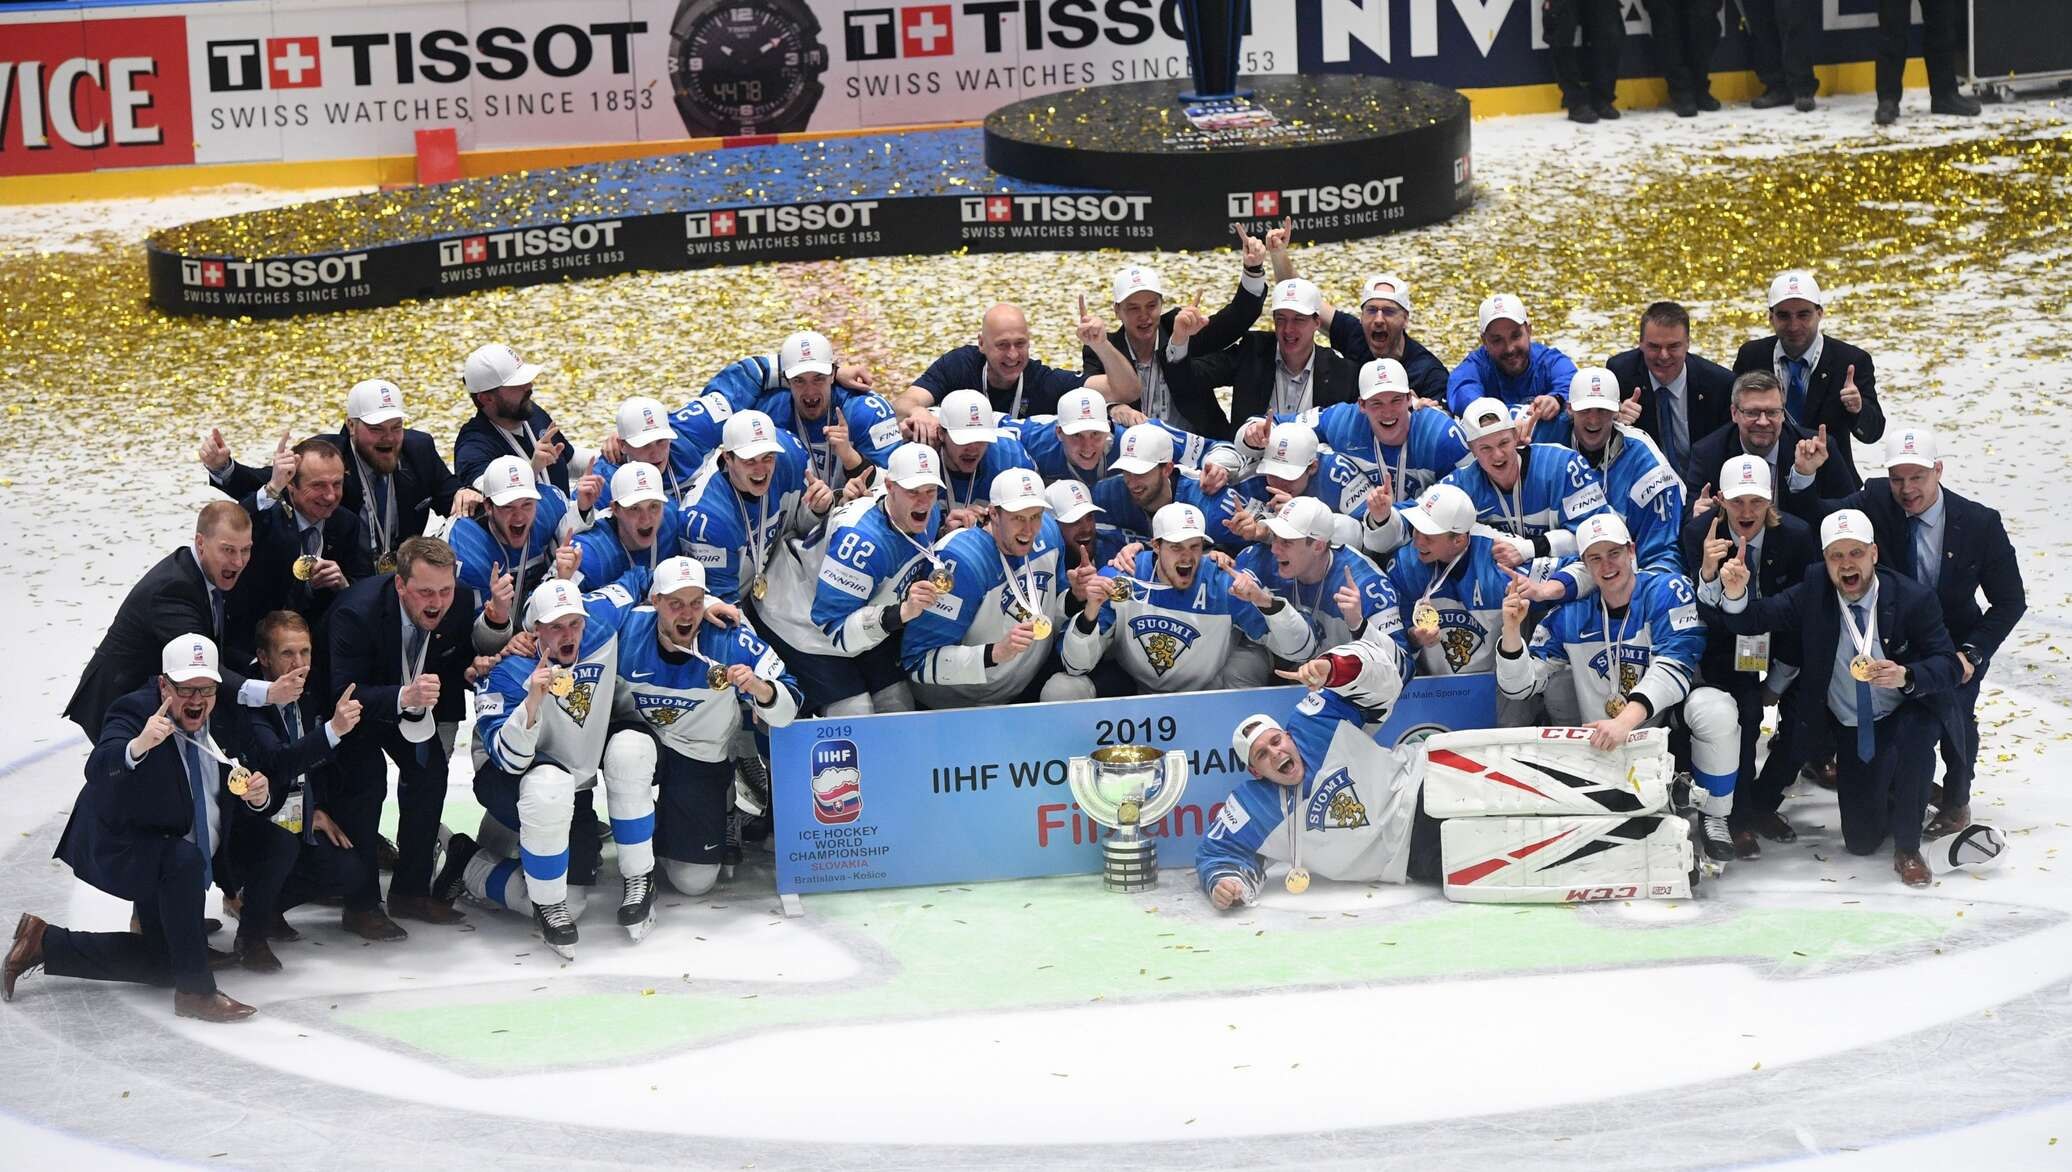 Сколько раз становилась чемпионом сборная команда финляндии